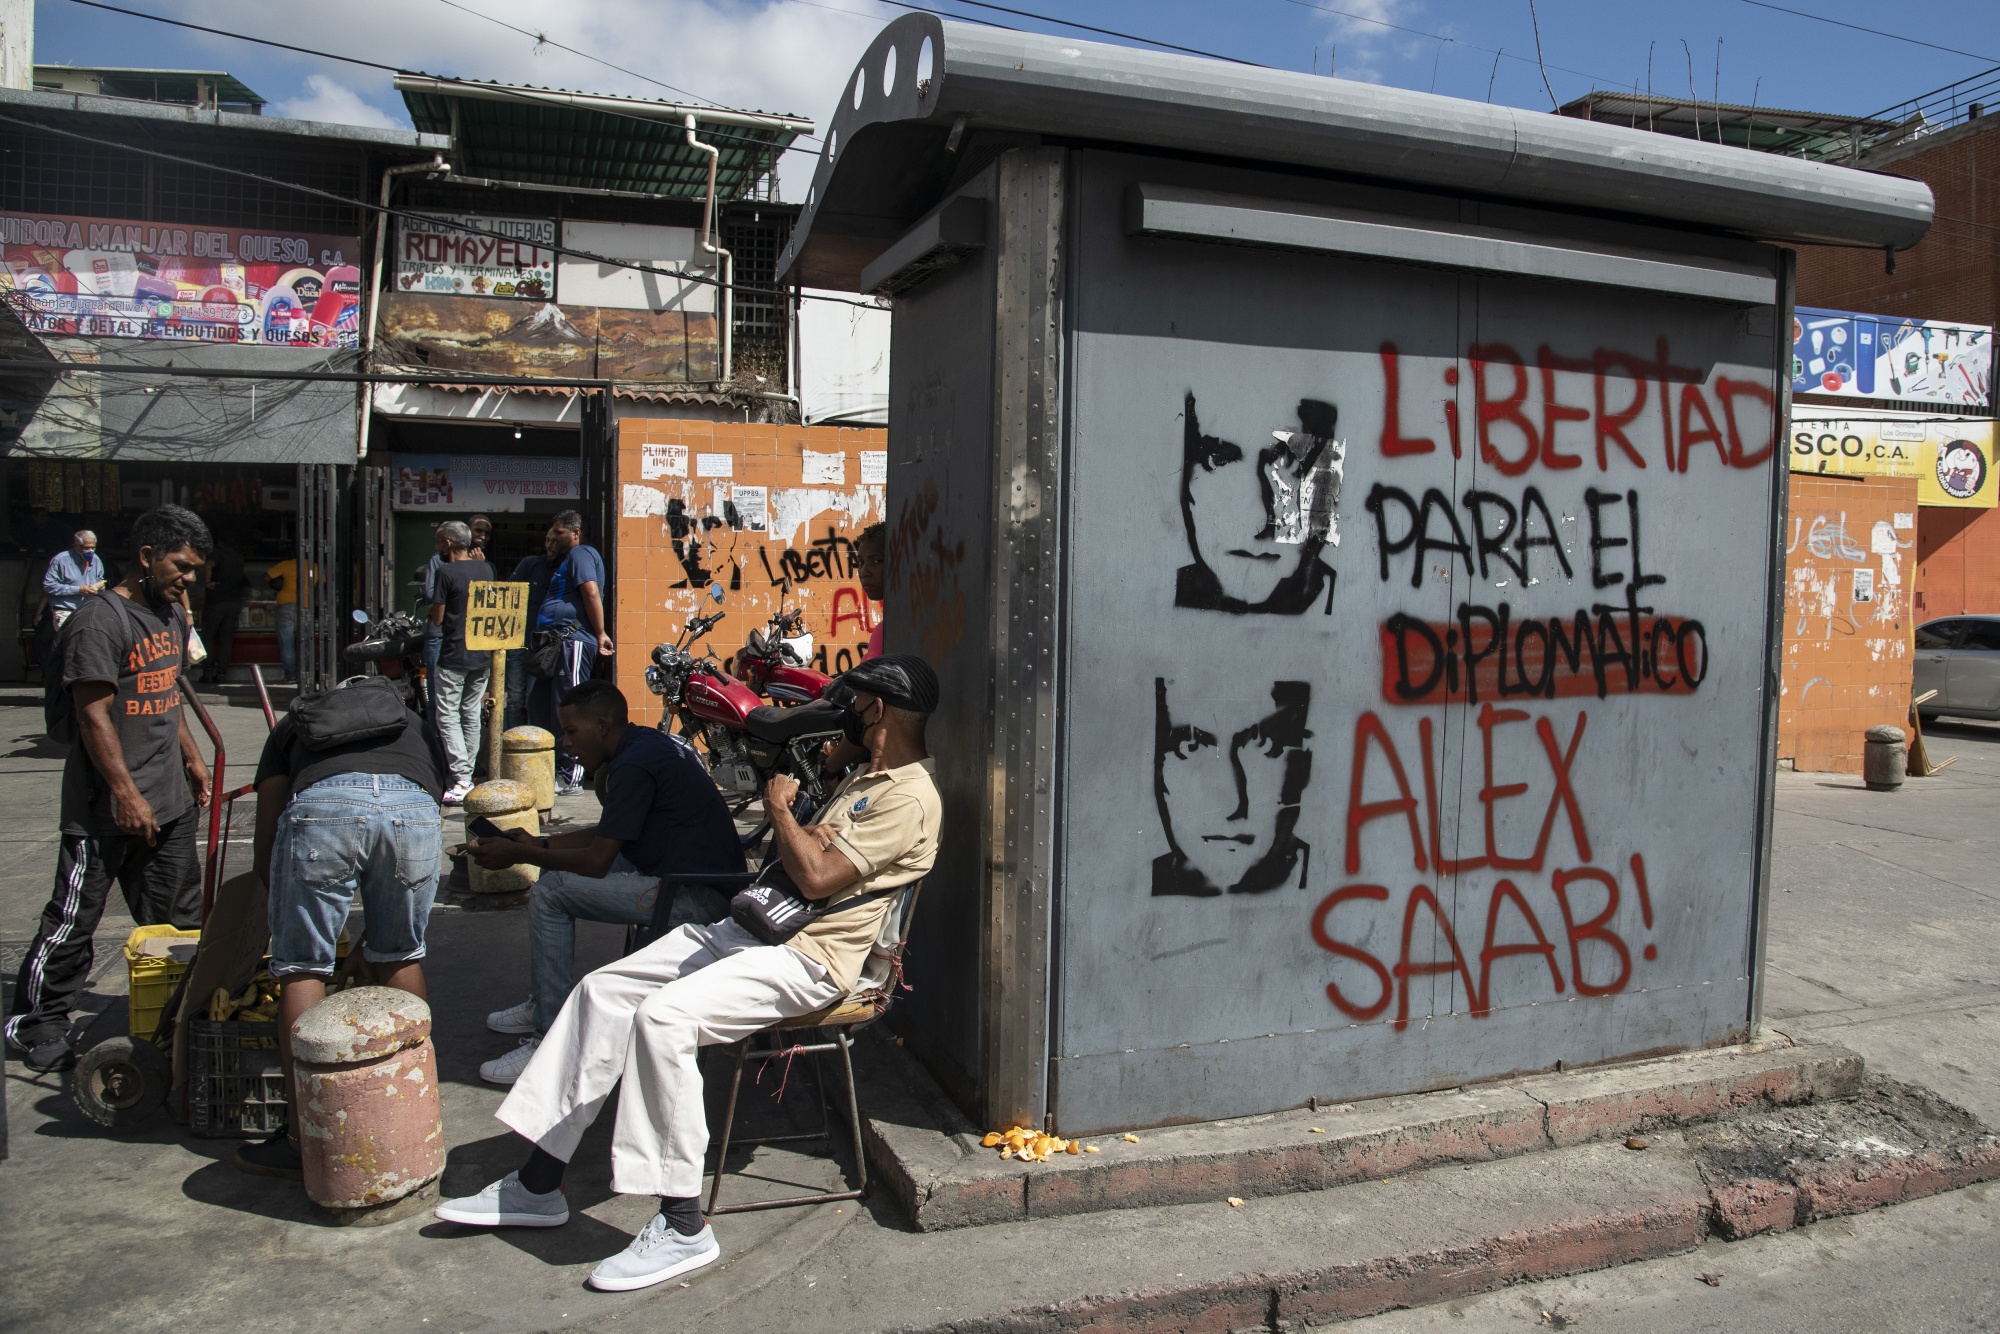 Graffiti estudiando en español "Libertad para el diplomático Alex Chab" En Caracas el 4 de febrero.